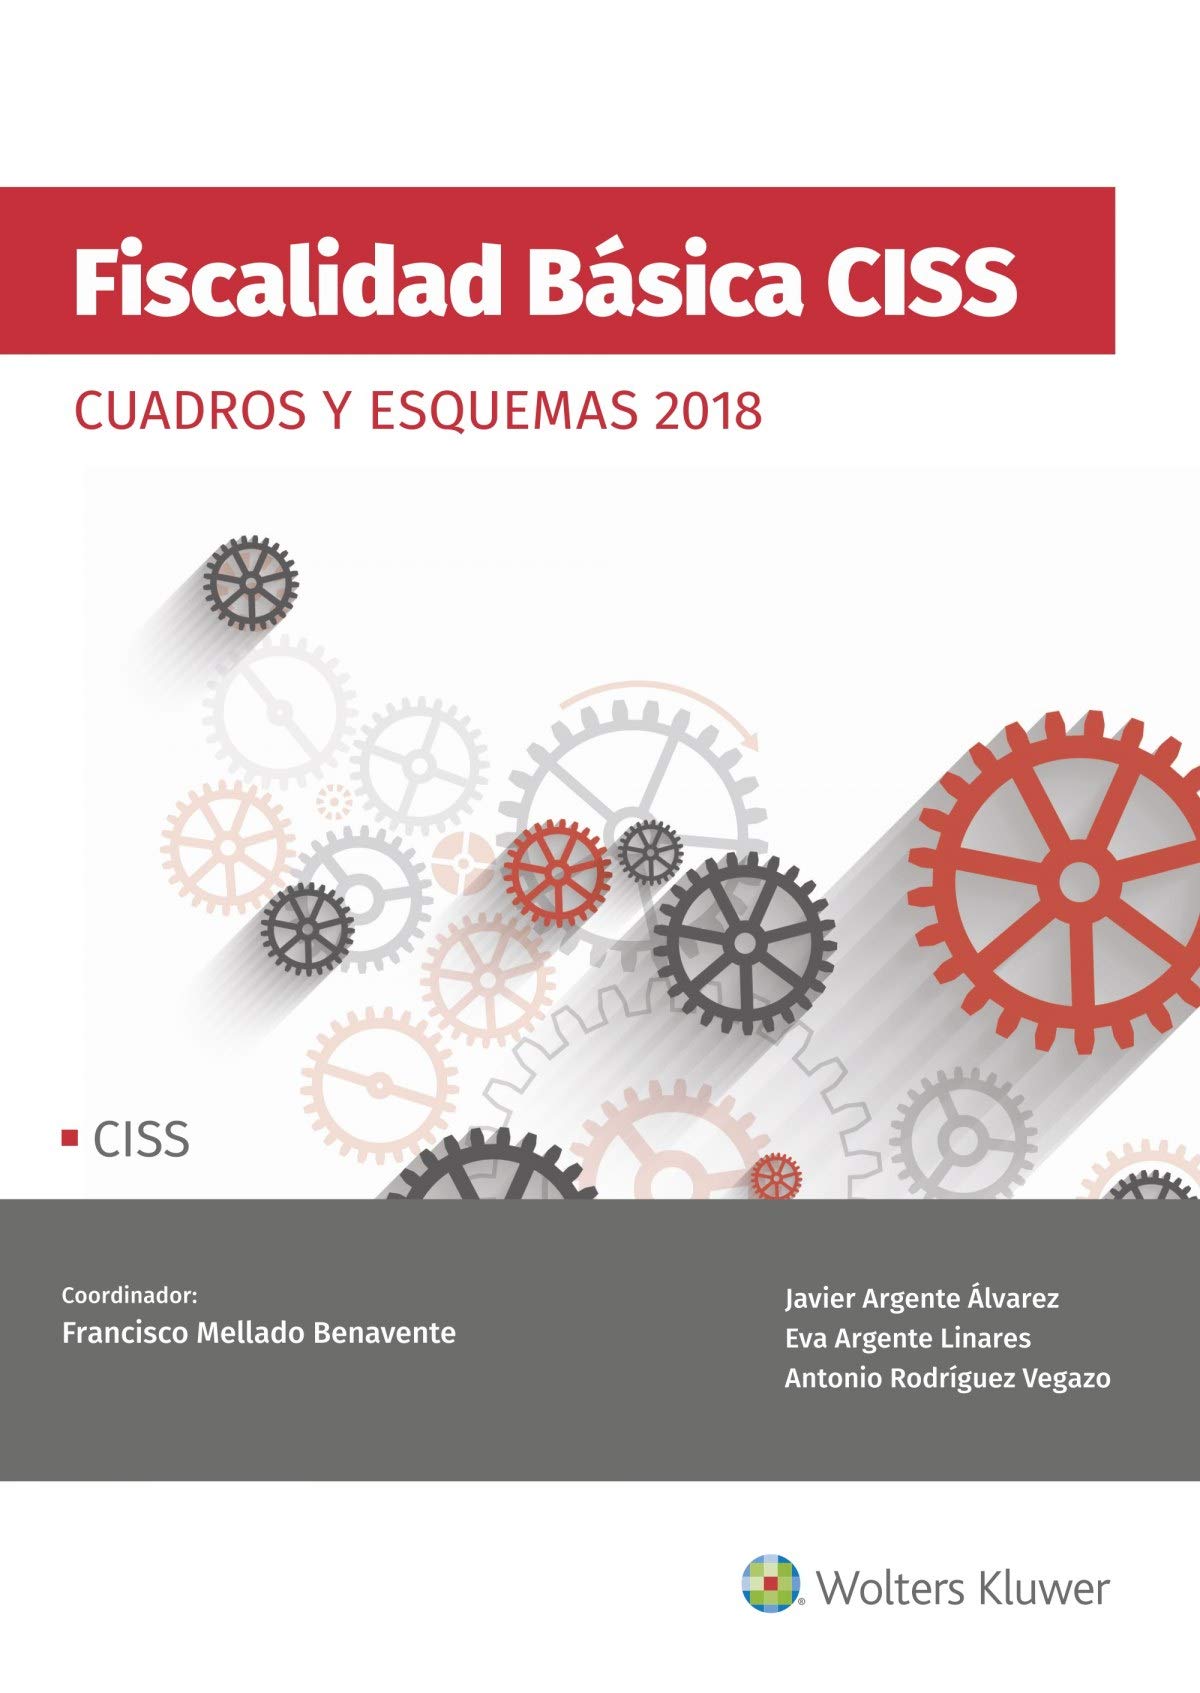 FISCALIDAD BASICA CISS CUADROS Y ESQUEMAS 2018